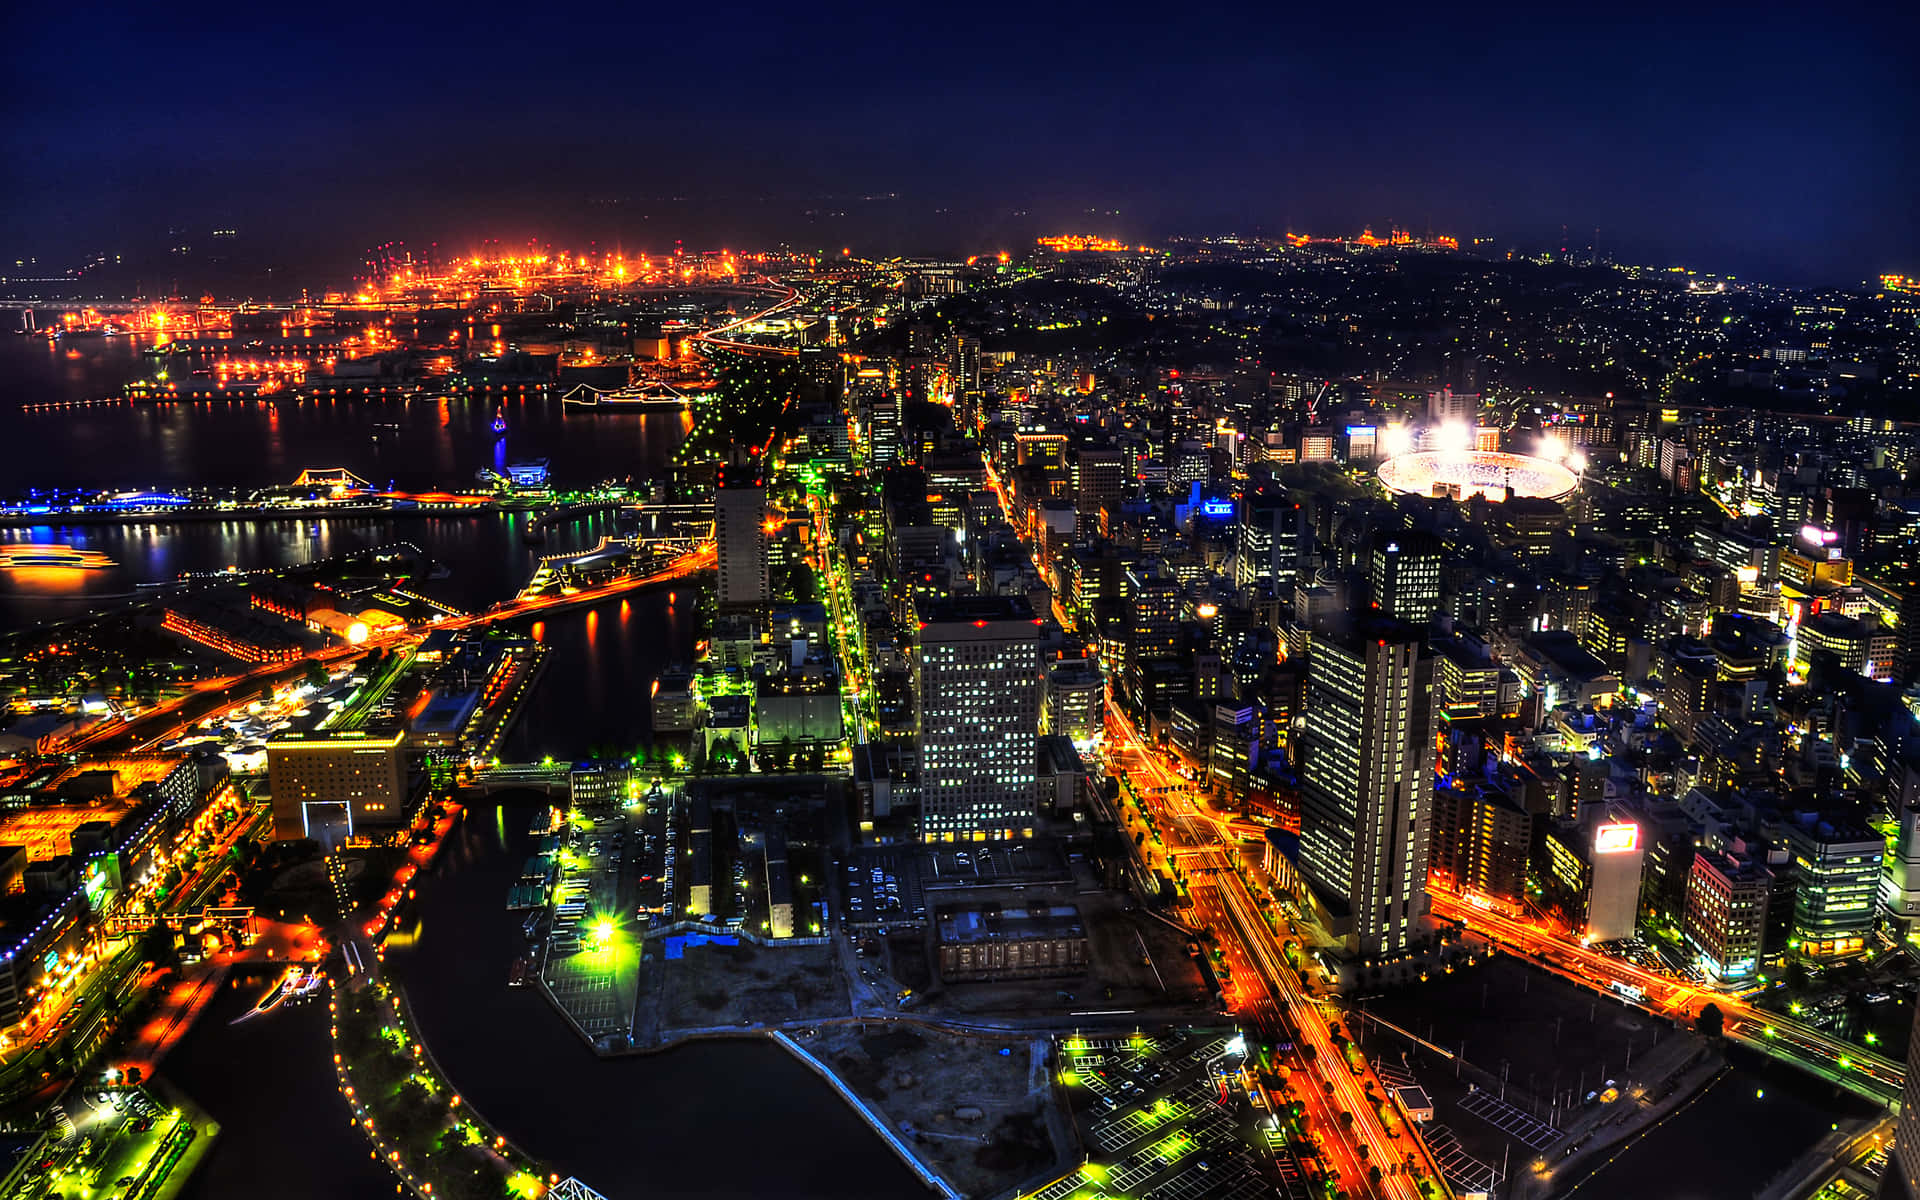 Hintergrundbildvon Tokio Mit Gelben Und Grünen Stadtleuchten.